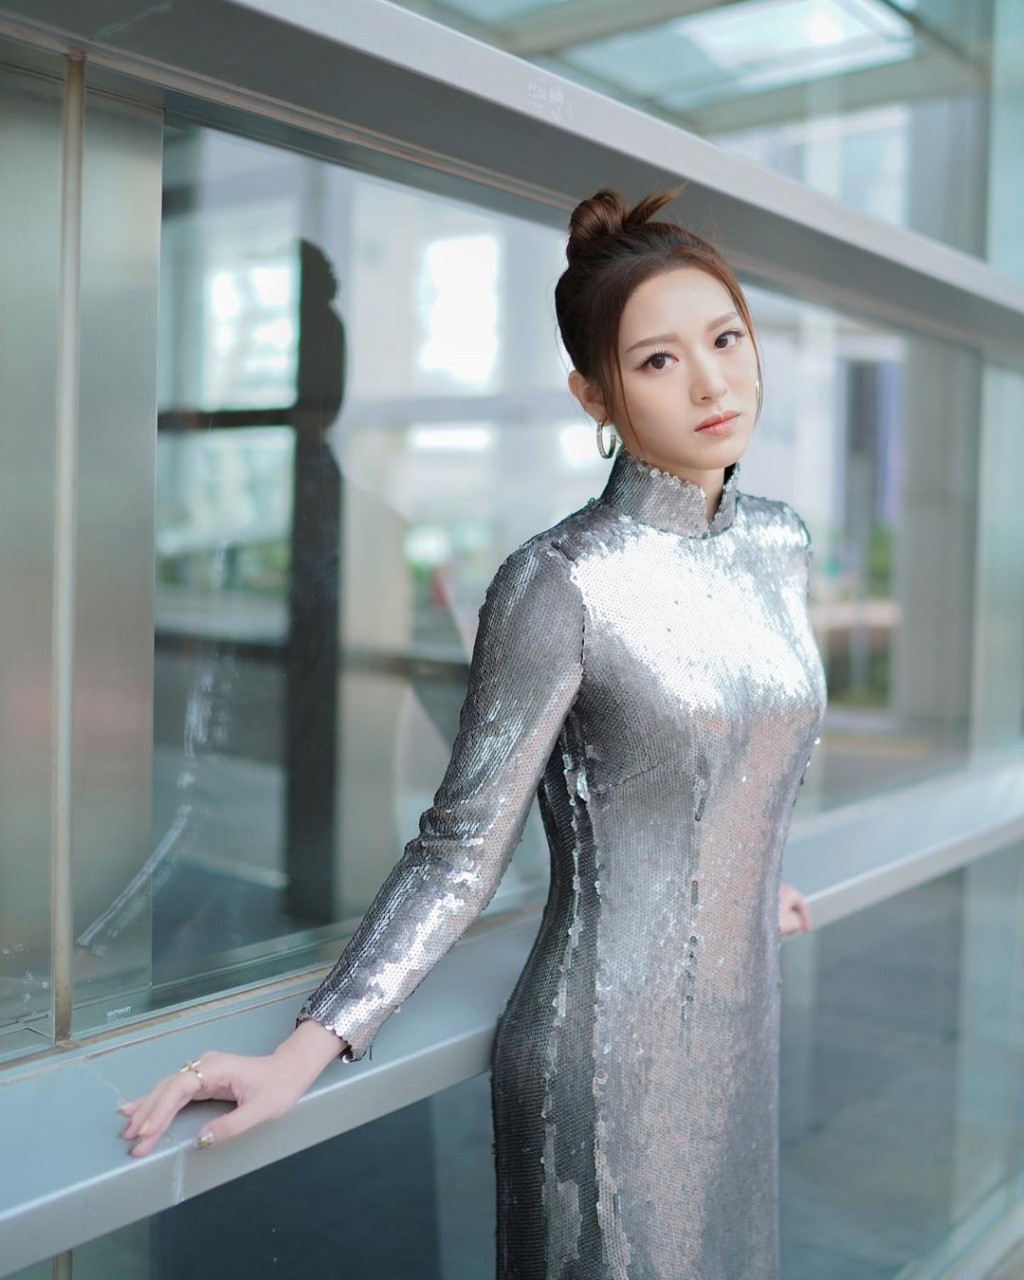 冯盈盈身穿银色闪亮长裙展示S身材。